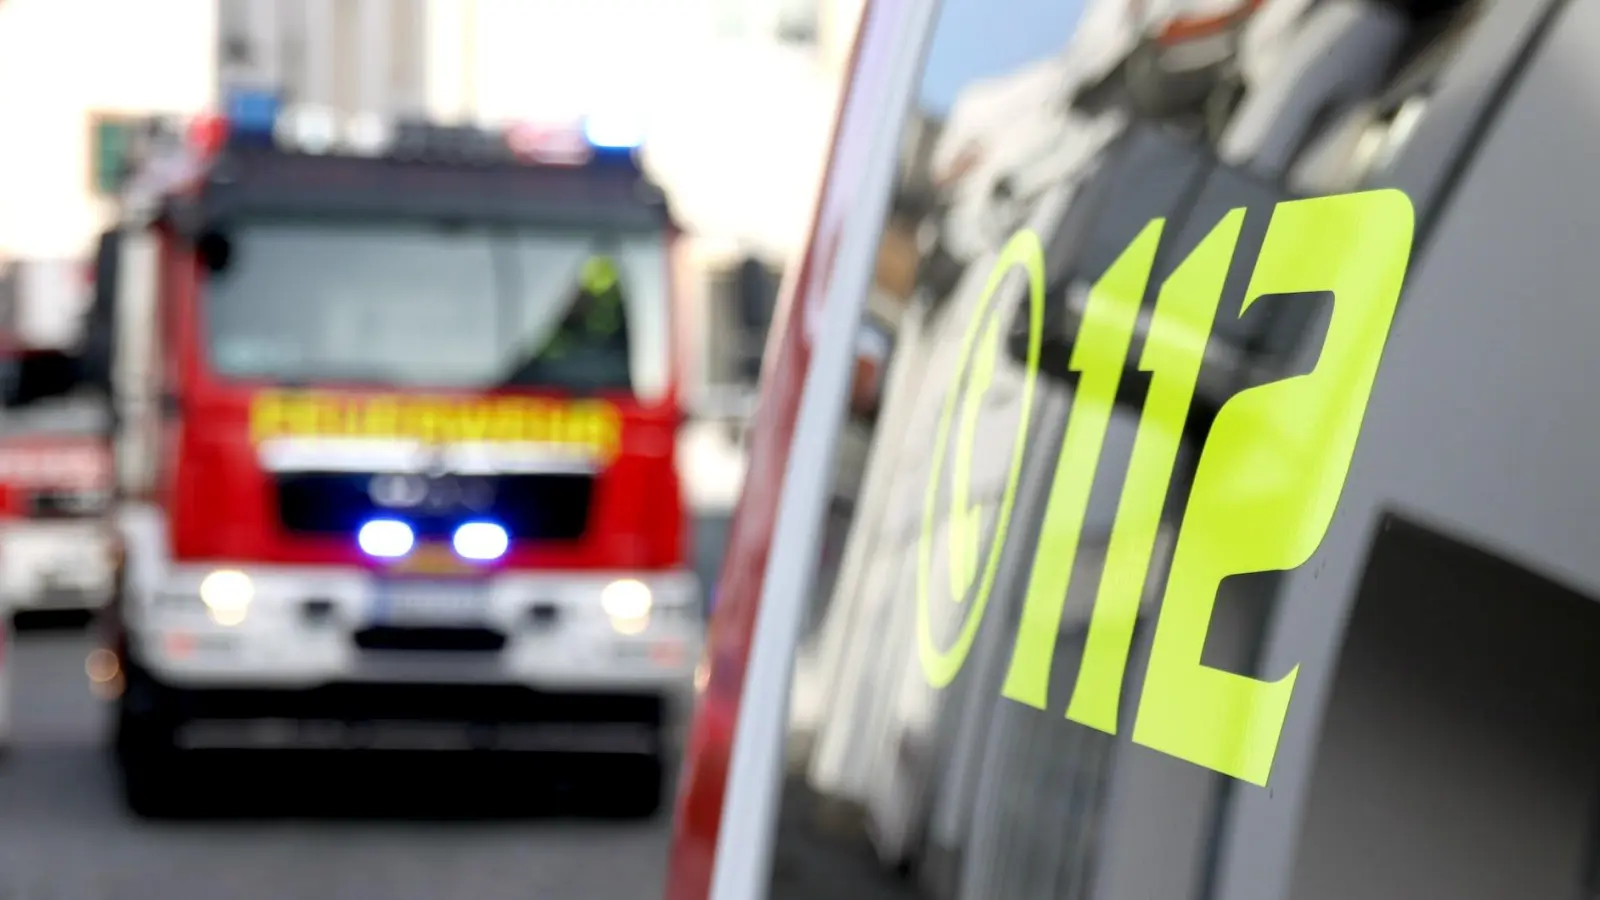 Wohnungsbrand: 23 Bewohner eines Mehrfamilienhauses evakuiert (Foto: nordsachsen24.de)